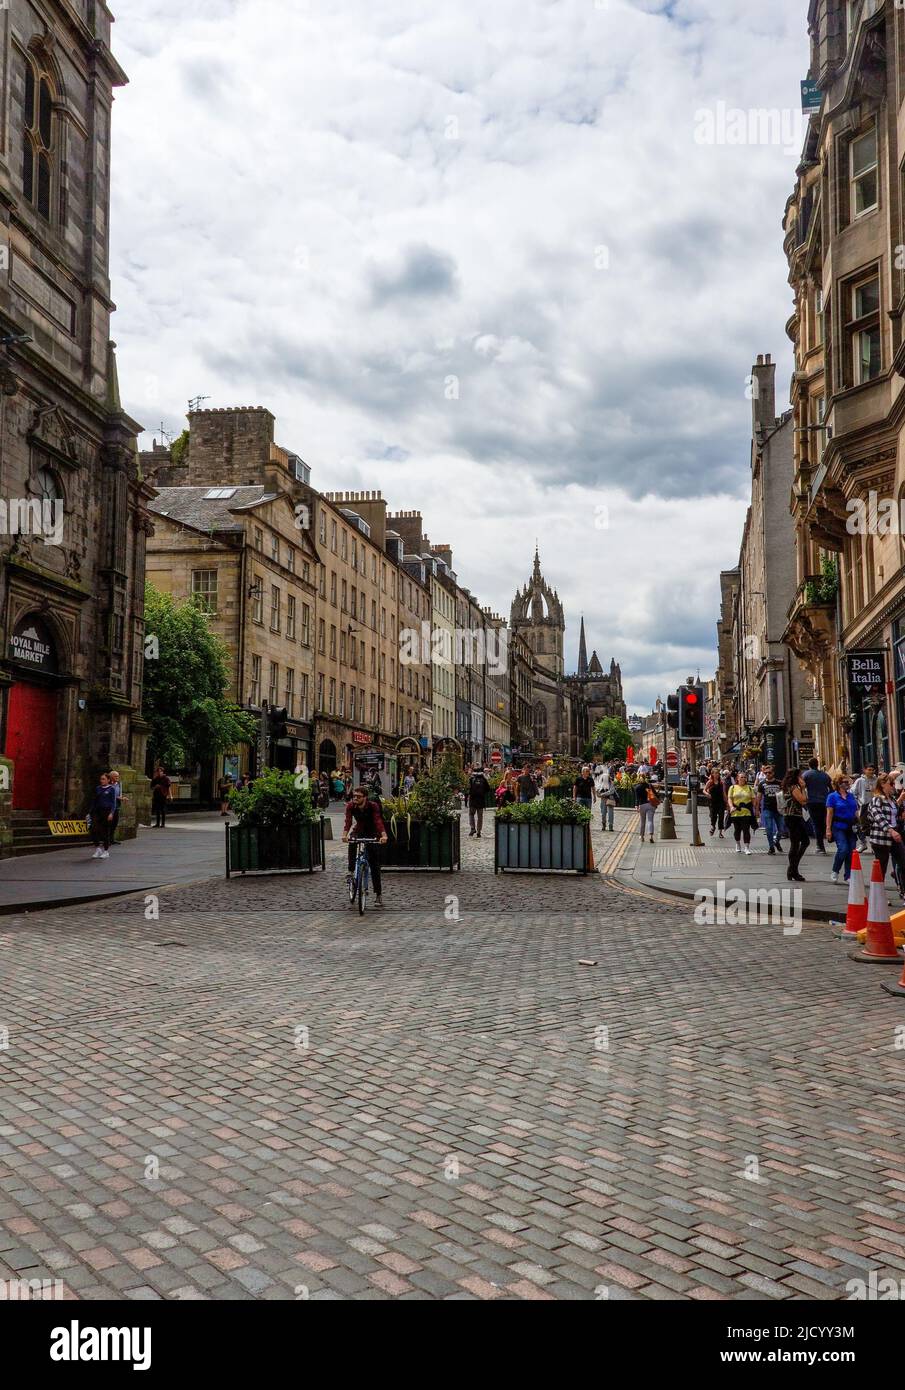 Touristes et habitants de la région appréciant les attractions et les entreprises locales sur le Royal Mile, Édimbourg, Écosse, Royaume-Uni Banque D'Images